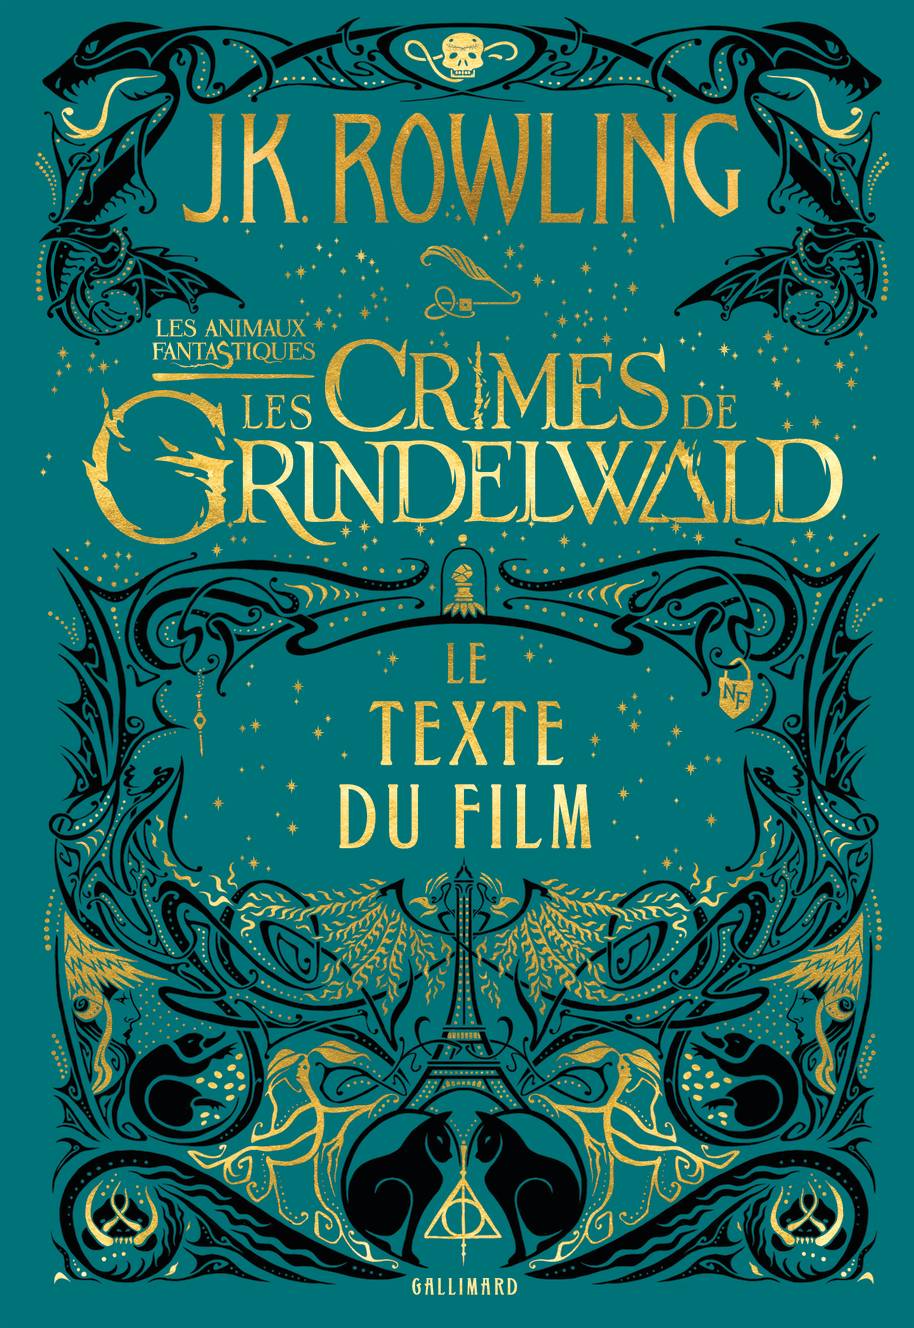 La couverture française des Animaux Fantastiques : Les Crimes de Grindelwald, aux éditions Gallimard